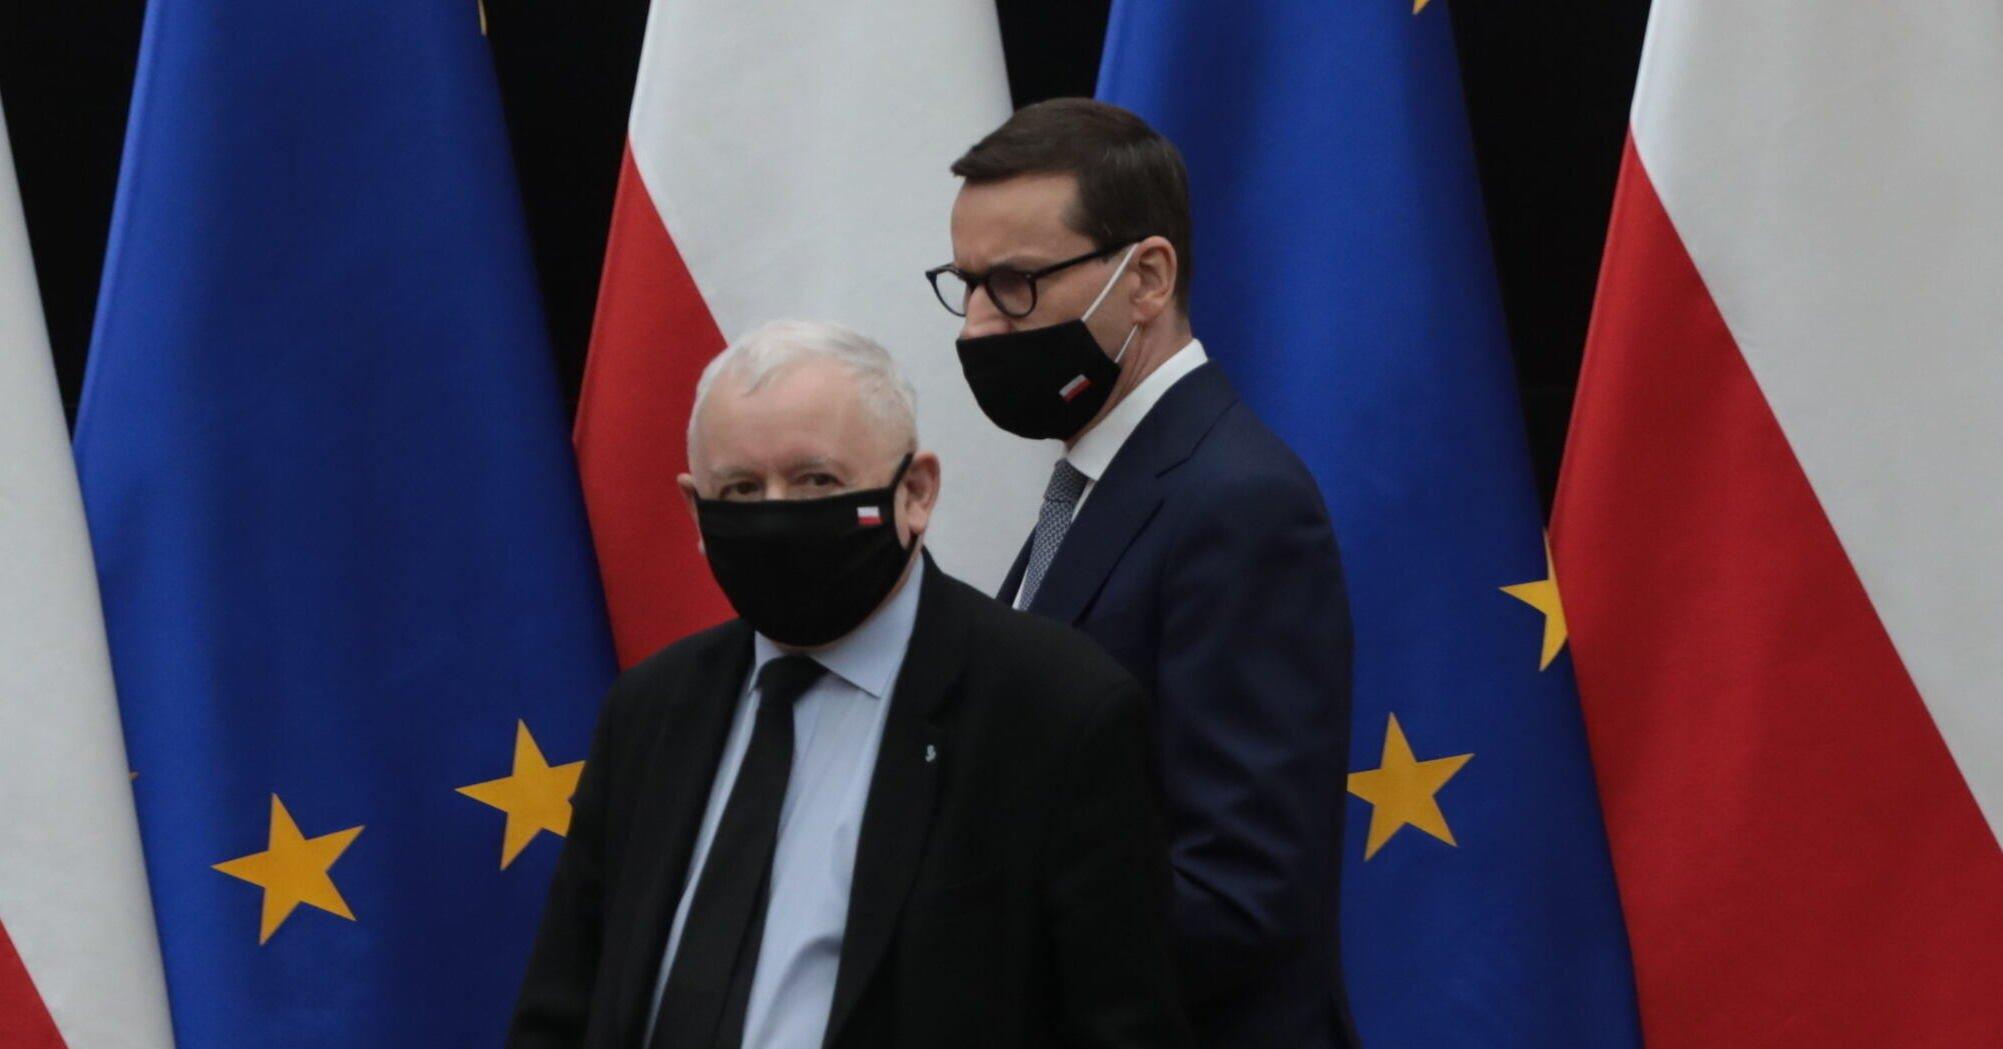 Jarosław Kaczyński w czarnej maseczce, obok Mateusz Morawiecki, też w czarnej maseczce